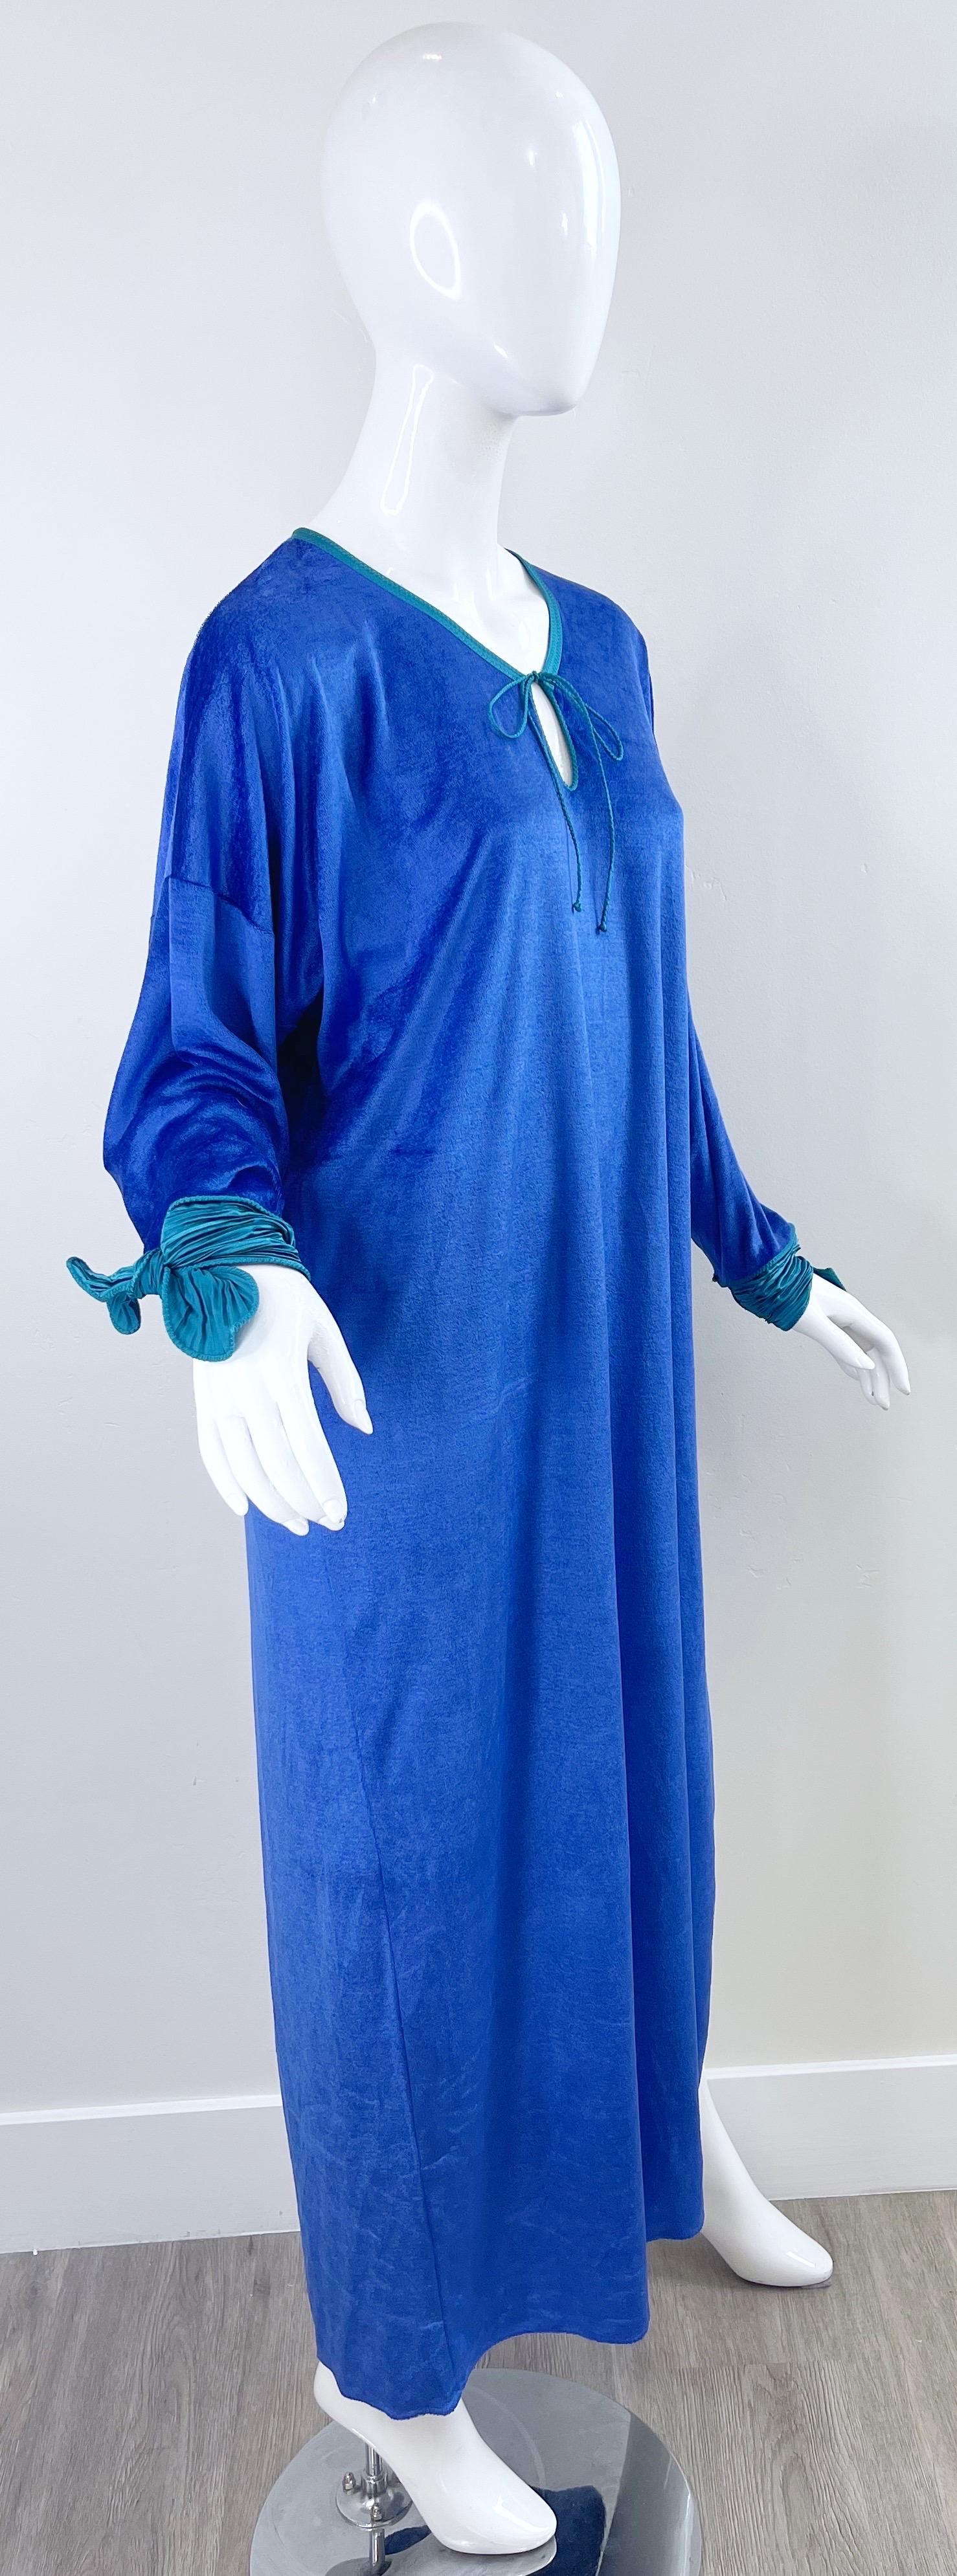 1980s Mary McFadden Royal Blue Teal Velour Vintage 80s Caftan Maxi Dress Kaftan For Sale 5